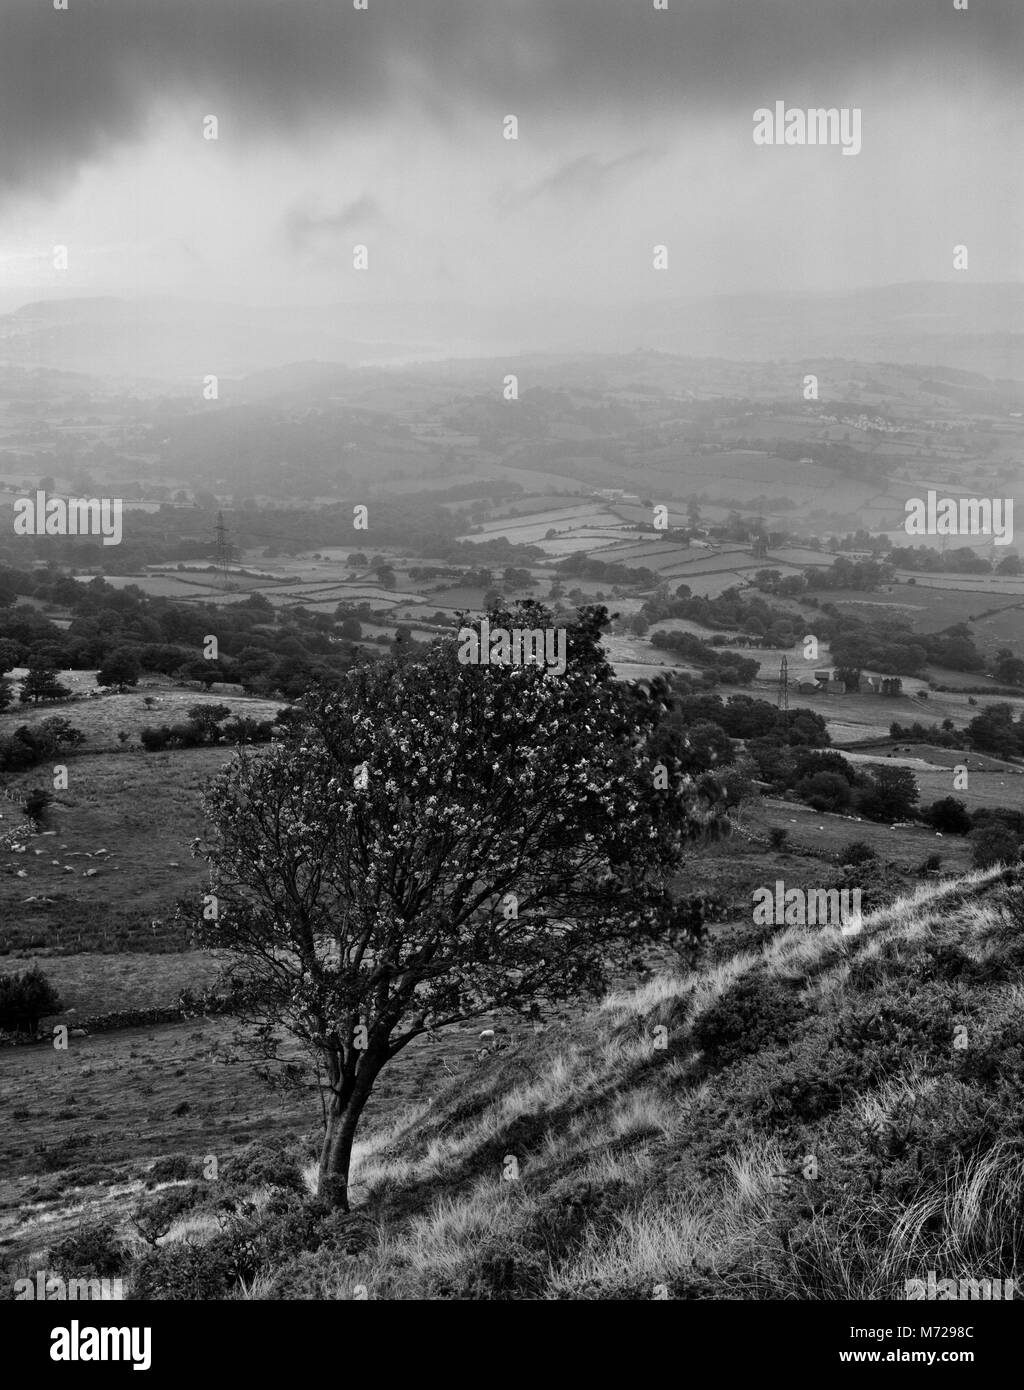 Voir à la NE à vallée de Conwy sur une arborescence rowan (mountain ash) sur N Pente de Pen y Gaer Fortin, Llanbedr y Cenin, au nord du Pays de Galles à la mi-septembre Banque D'Images